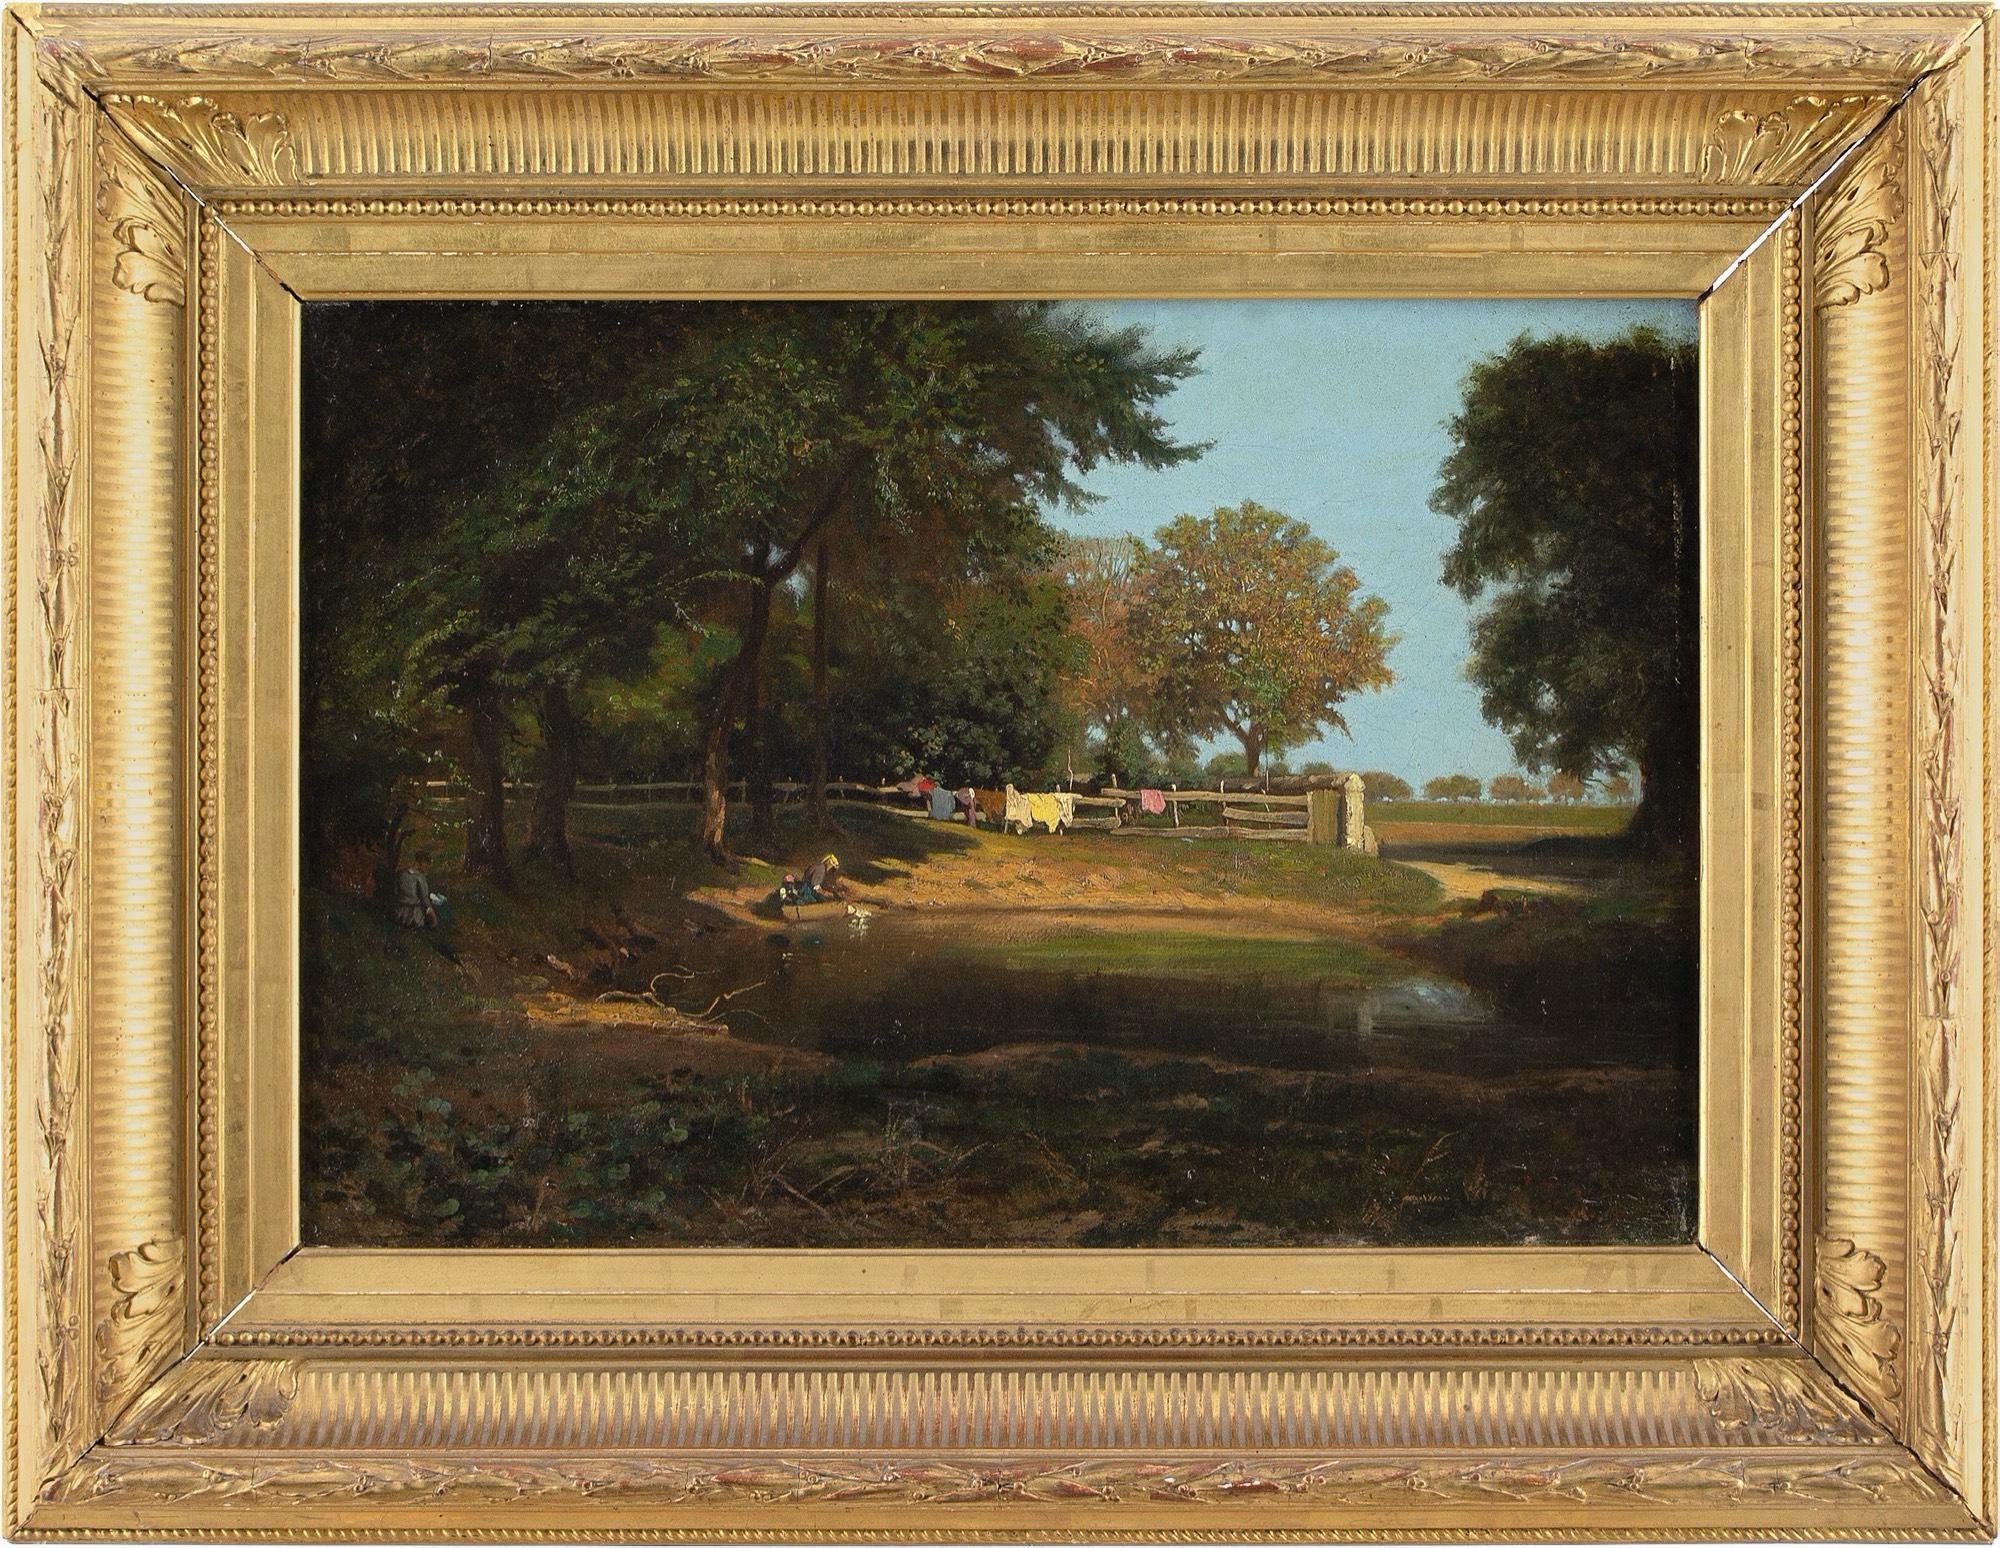 Cette peinture à l'huile du XIXe siècle de l'artiste français Léon Adolphe Belly (1827-1877) représente une vue de forêt avec un étang et des femmes en train de laver du linge. Il s'agit d'une représentation douce, très éloignée de ses grandes